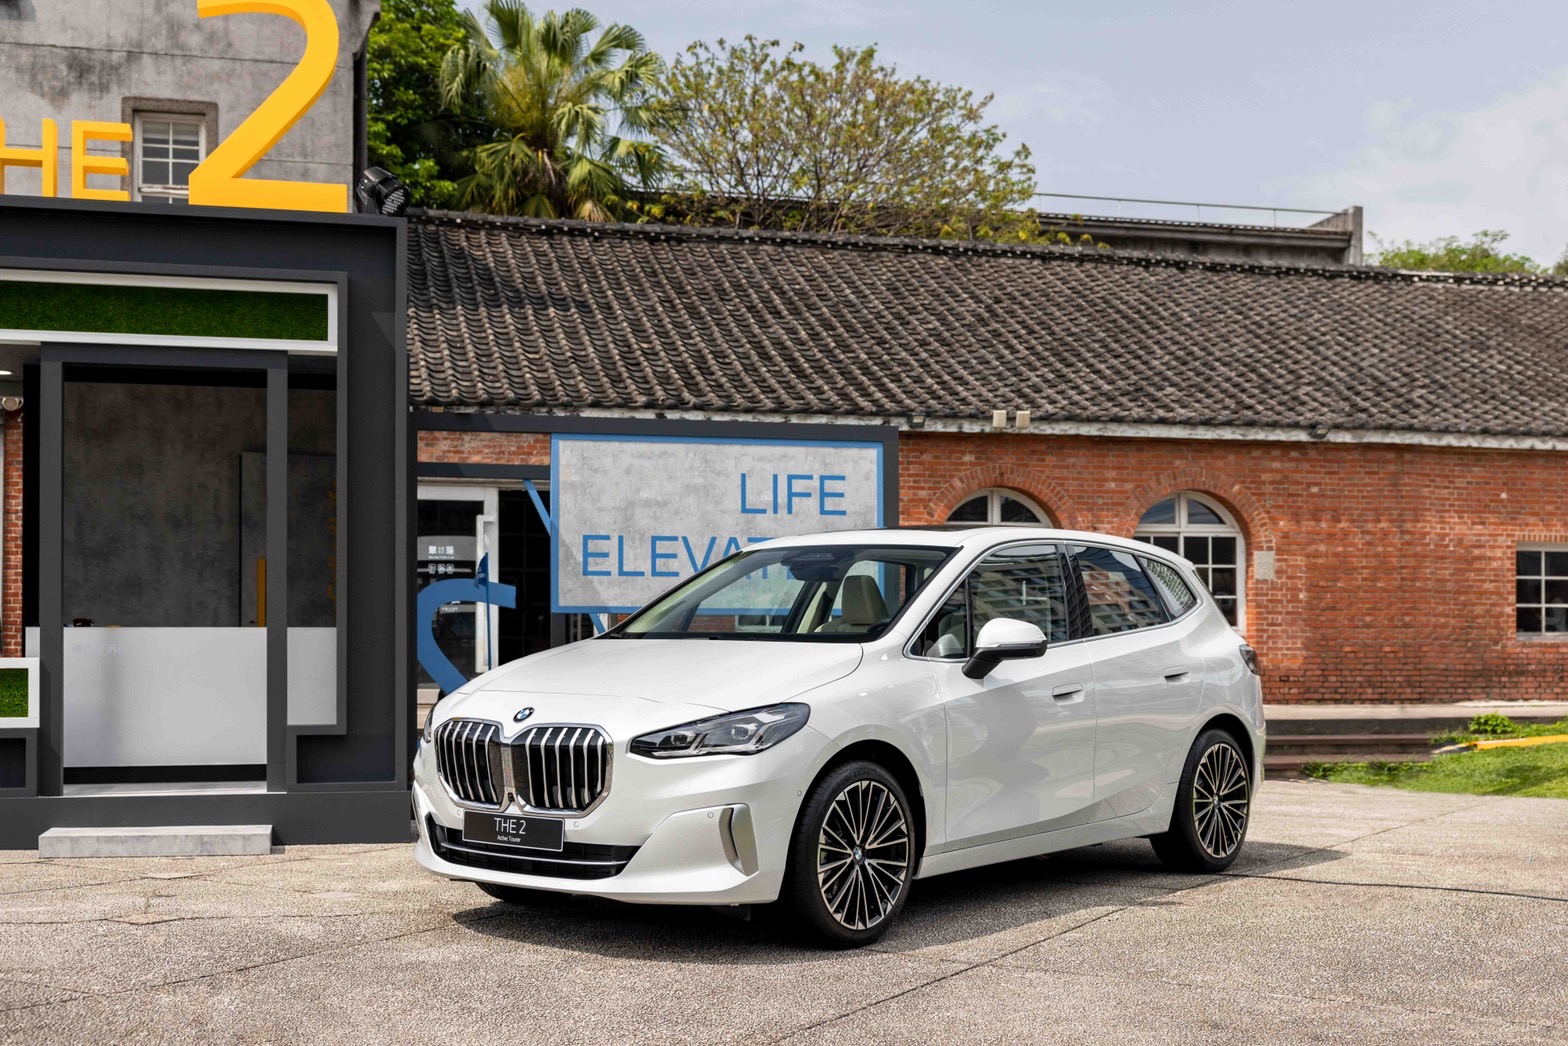 [新聞照片二] 全新世代BMW 2系列Active Tourer豪華運動跑旅，充滿動感與幾何美學的設計語彙，結合一體式曲面螢幕、BMW iDrive 8.0使用者介面與同級唯一的AR擴增實境導航，鋪陳BMW新世代.jpg